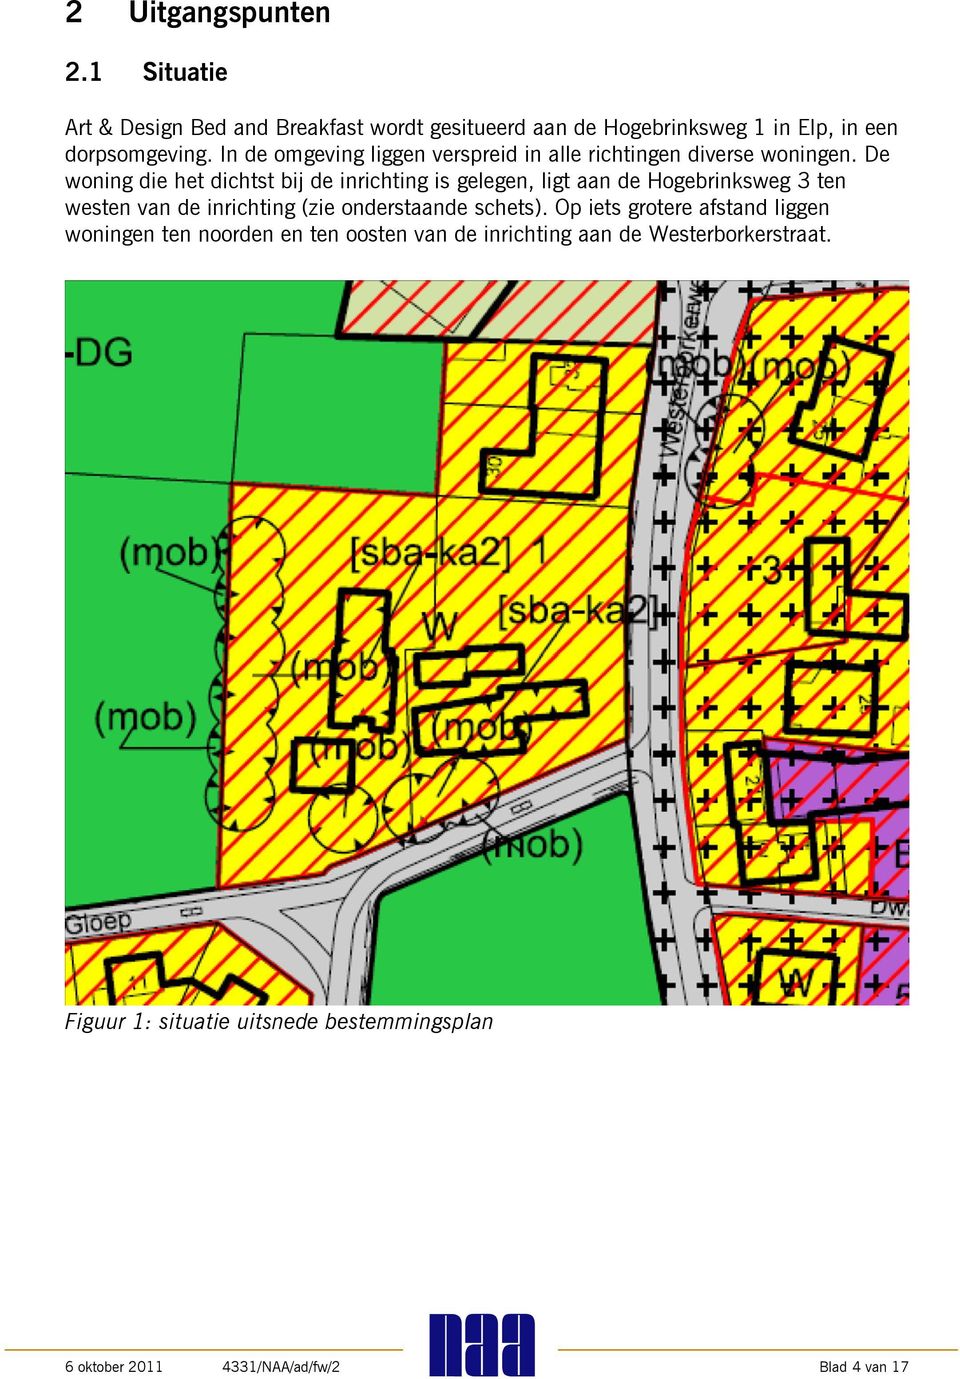 De woning die het dichtst bij de inrichting is gelegen, ligt aan de Hogebrinksweg 3 ten westen van de inrichting (zie onderstaande